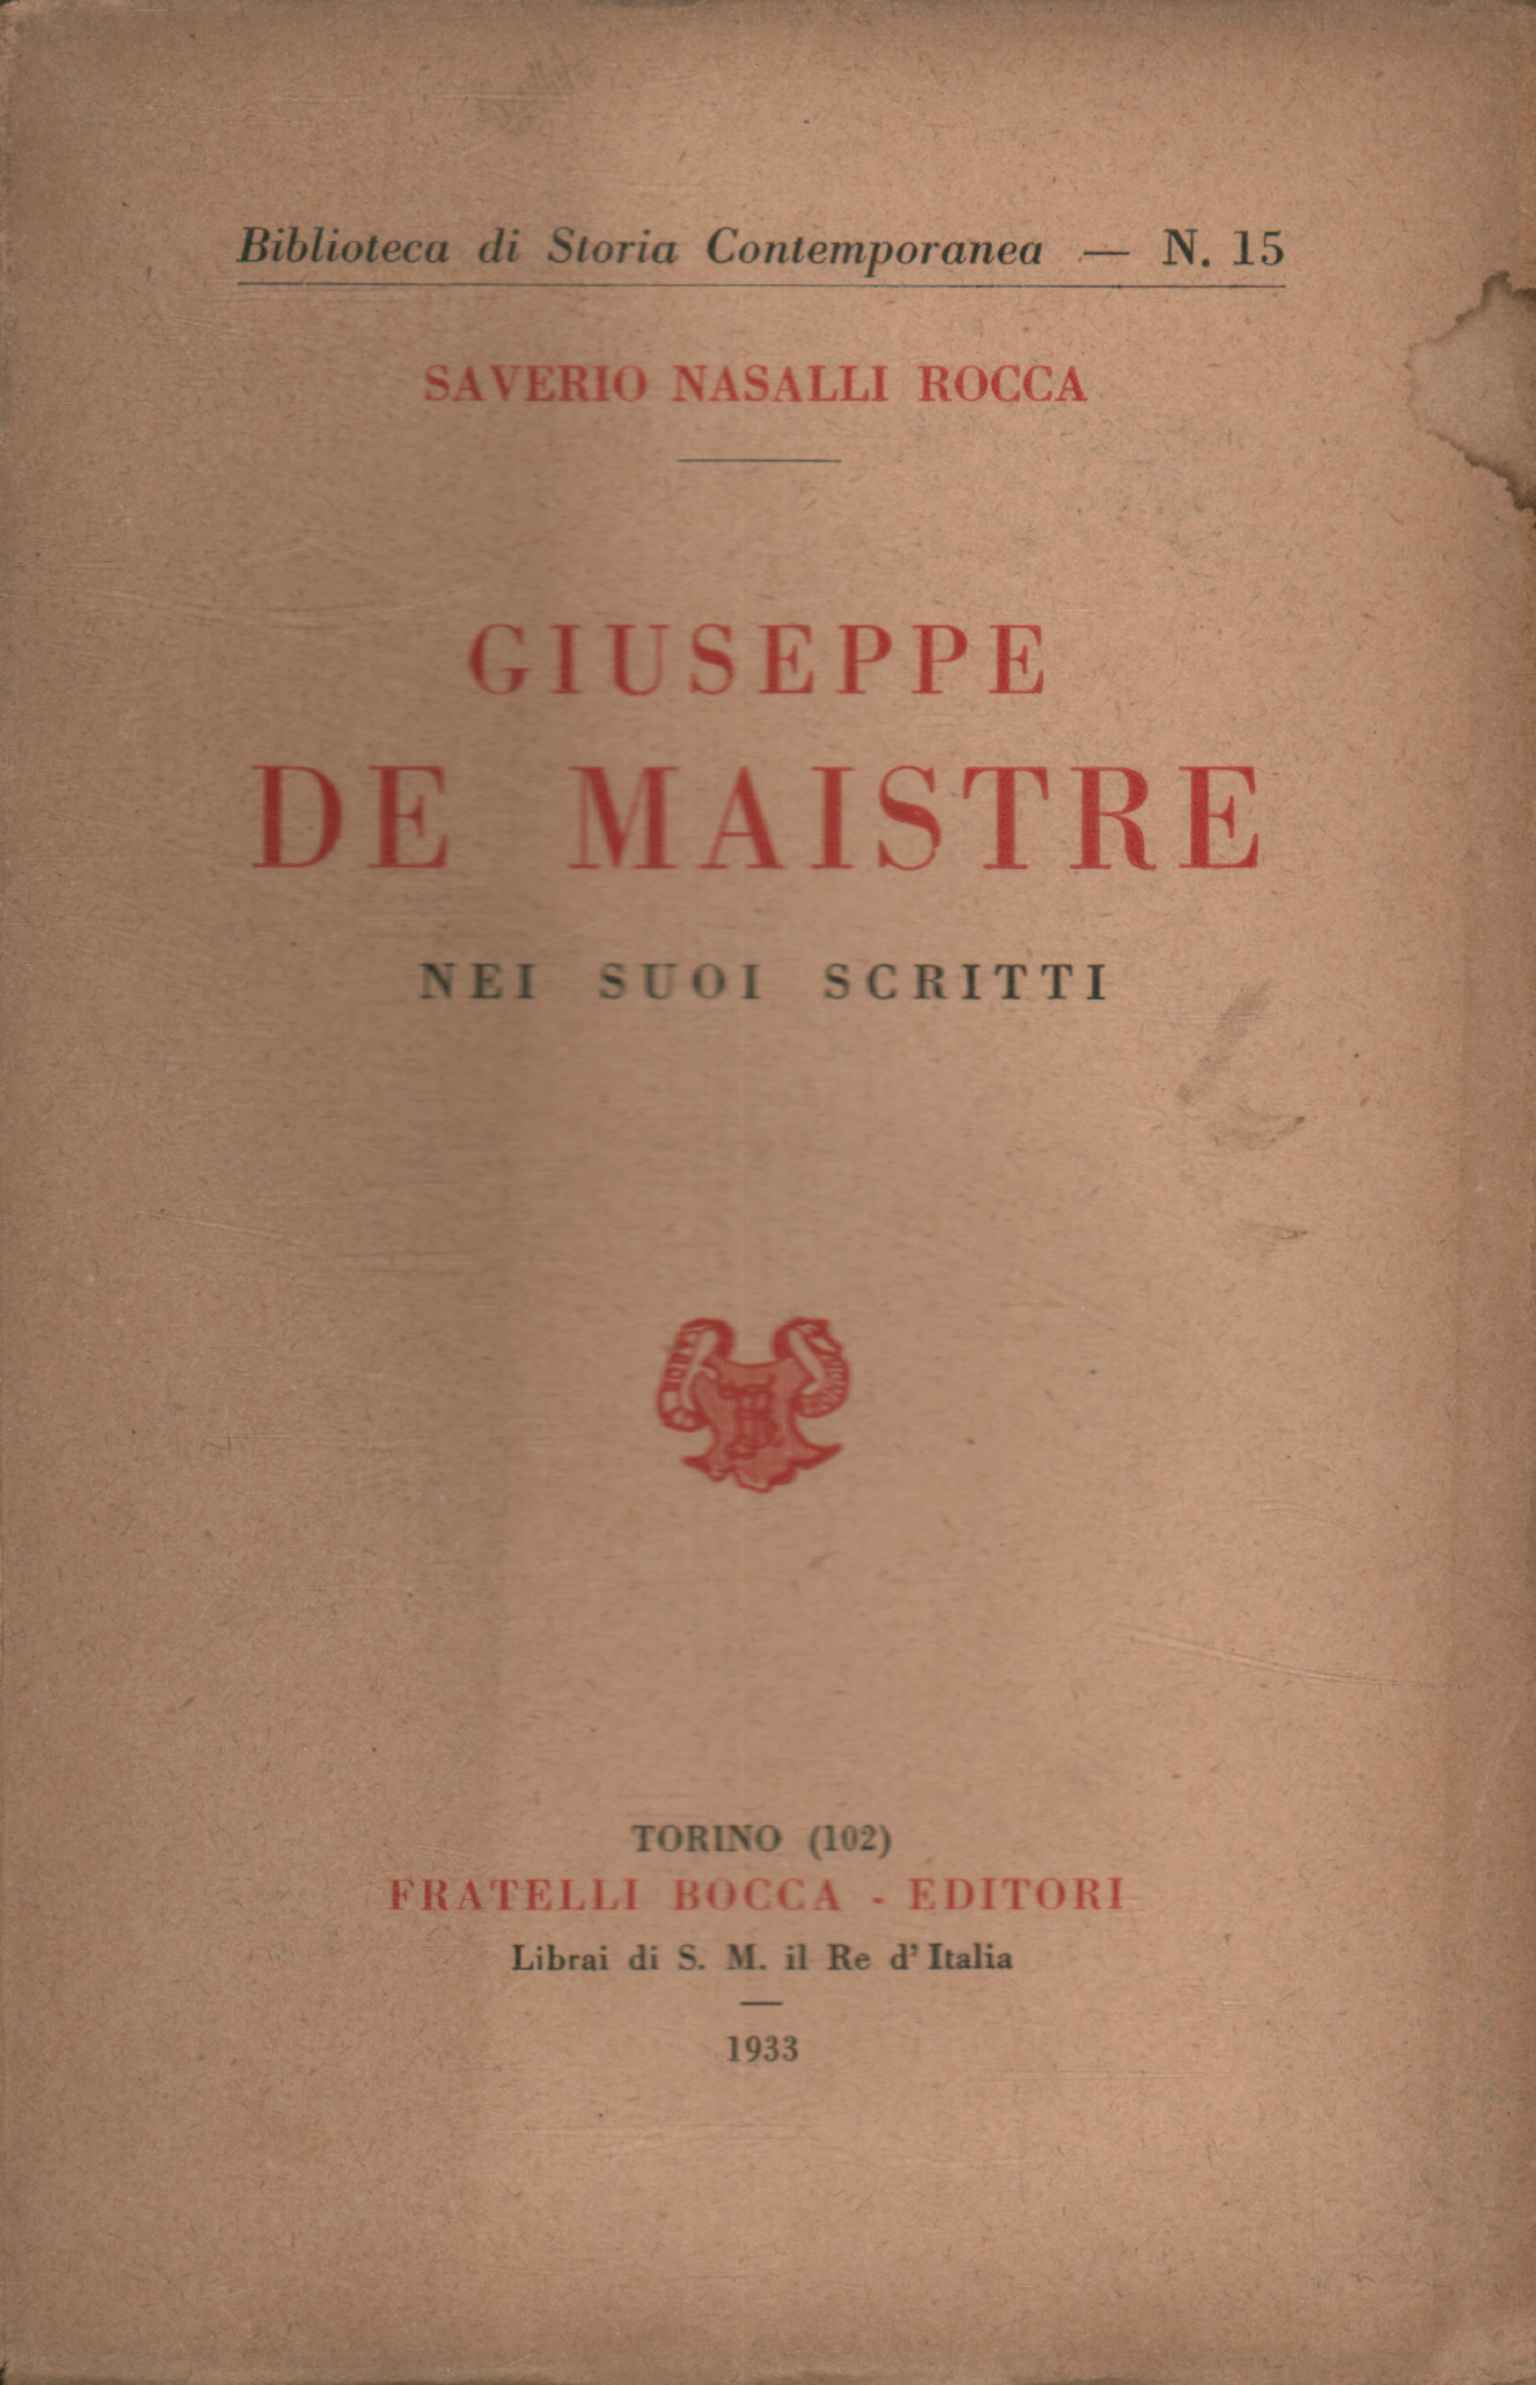 Giuseppe De Maistre dans ses écrits